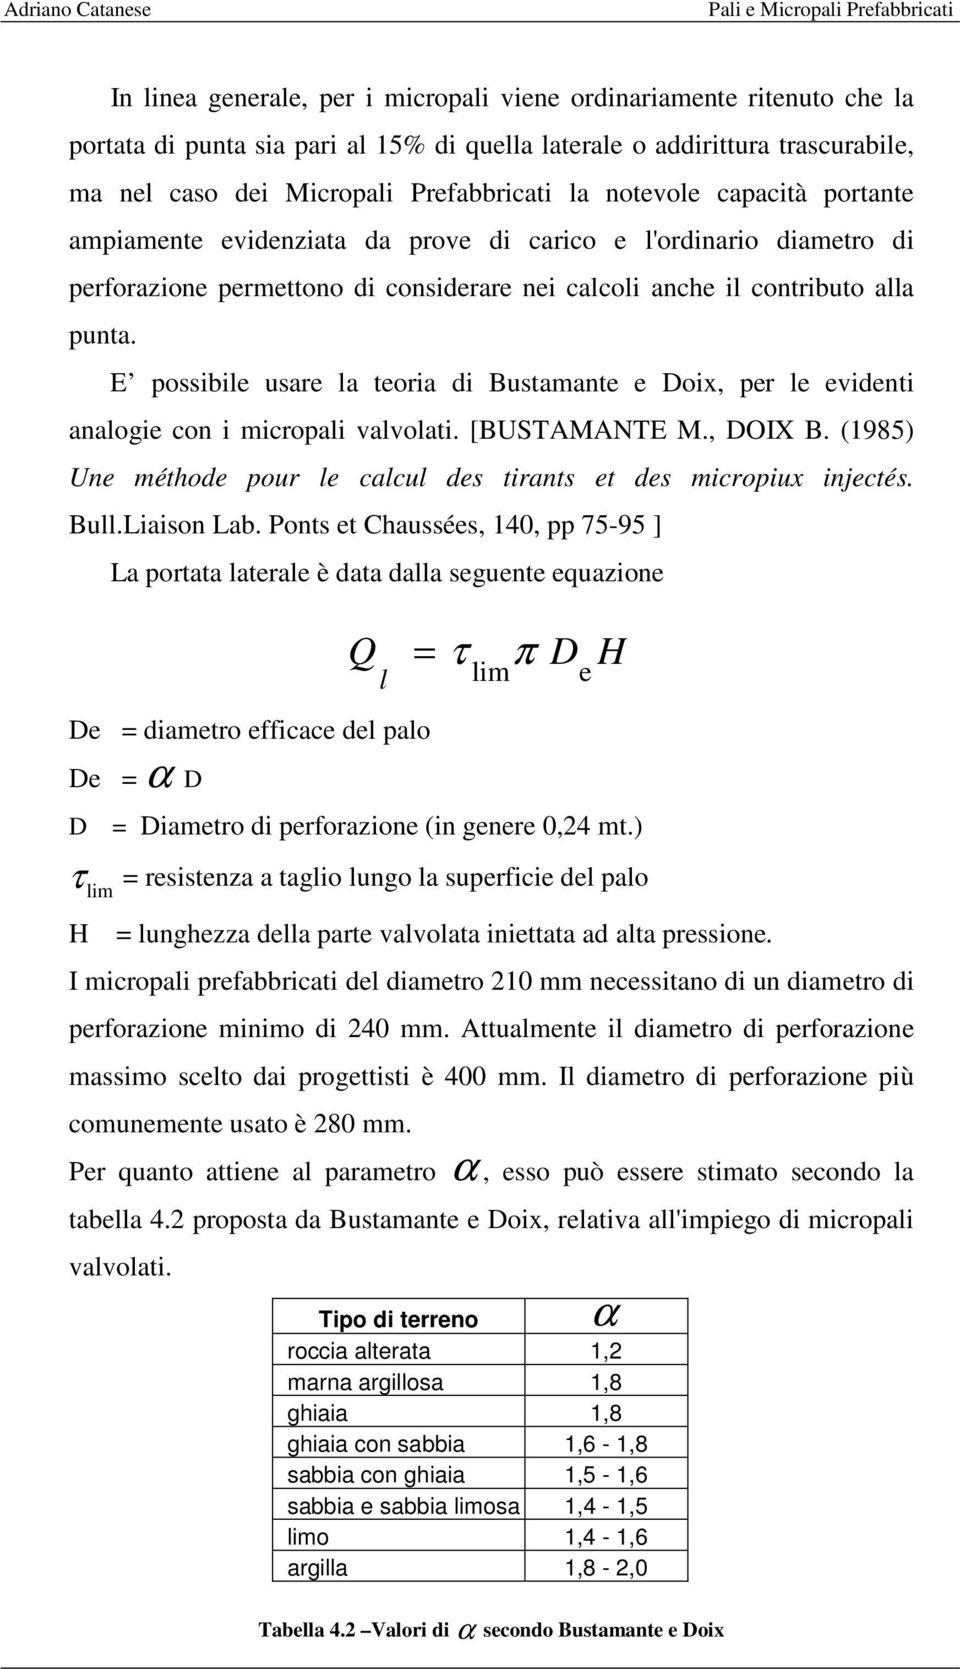 E possibile usare la teoria di Bustamante e Doix, per le evidenti analogie con i micropali valvolati. [BUSTAMANTE M., DOIX B. (1985) Une méthode pour le calcul des tirants et des micropiux injectés.